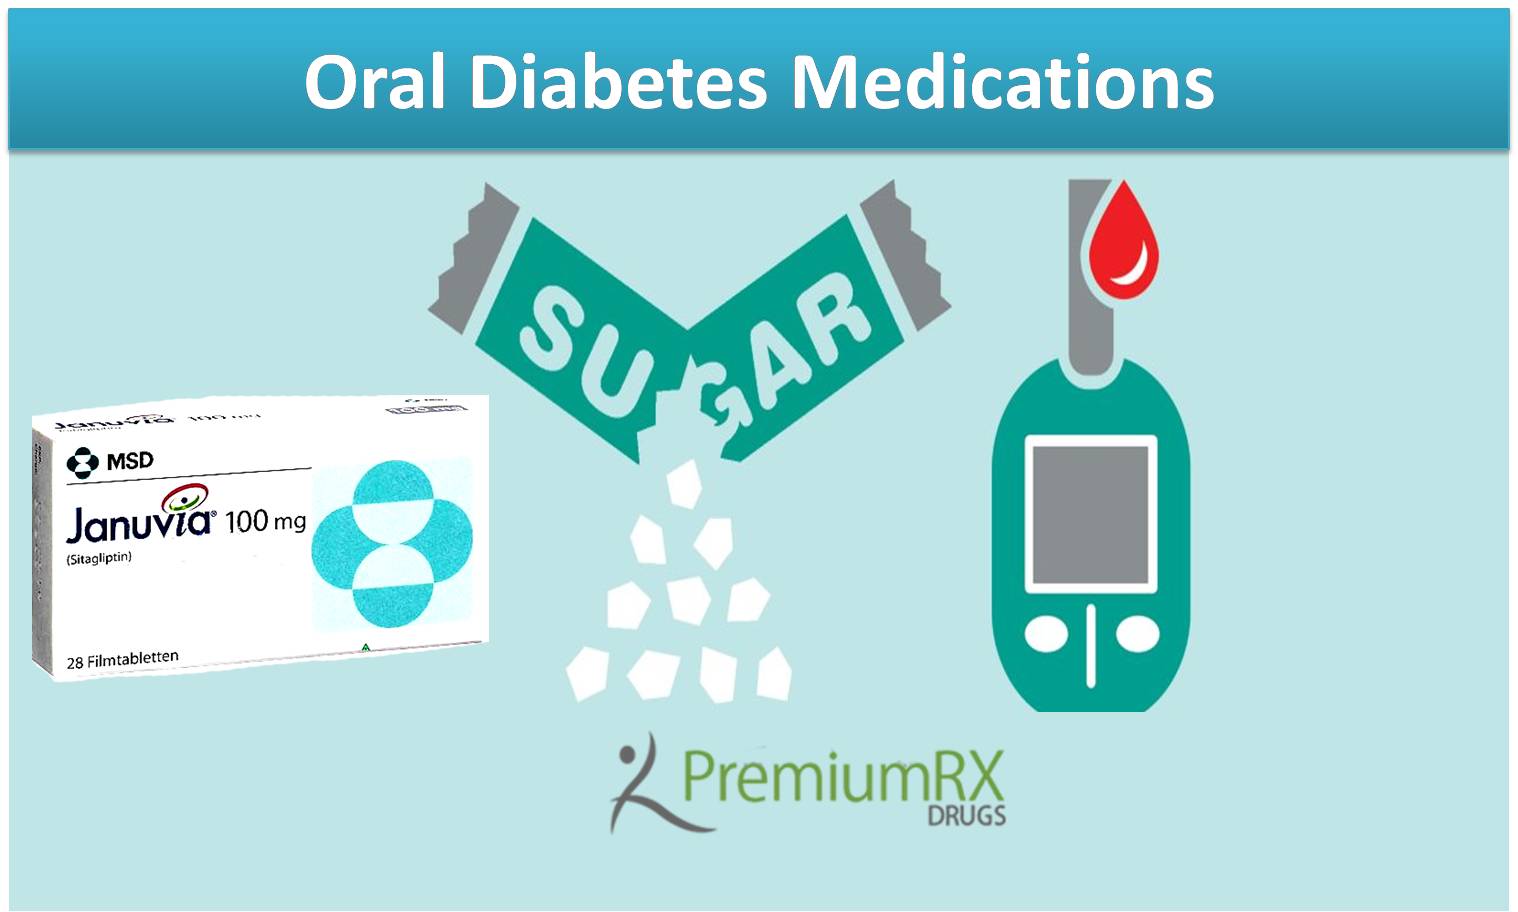 Oral Diabetes Medications